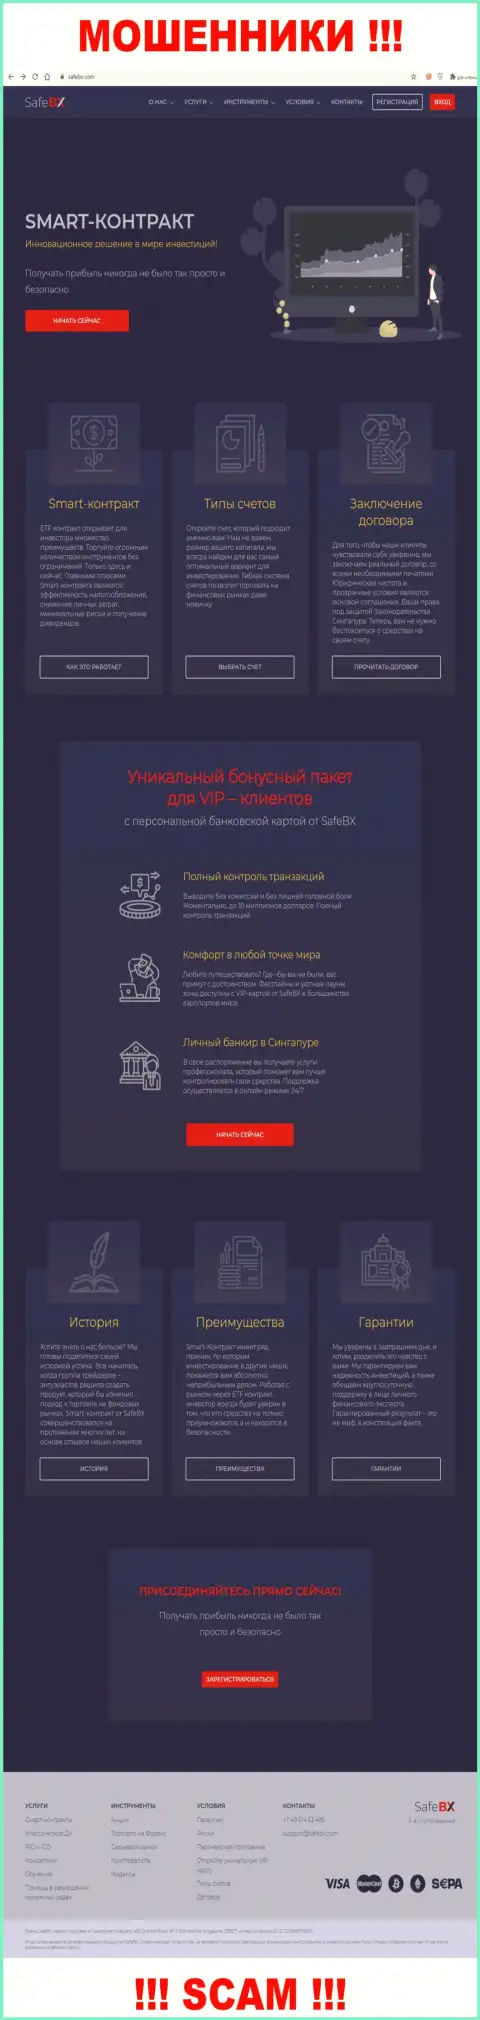 Скриншот официального web-ресурса SafeBX - SafeBX Com